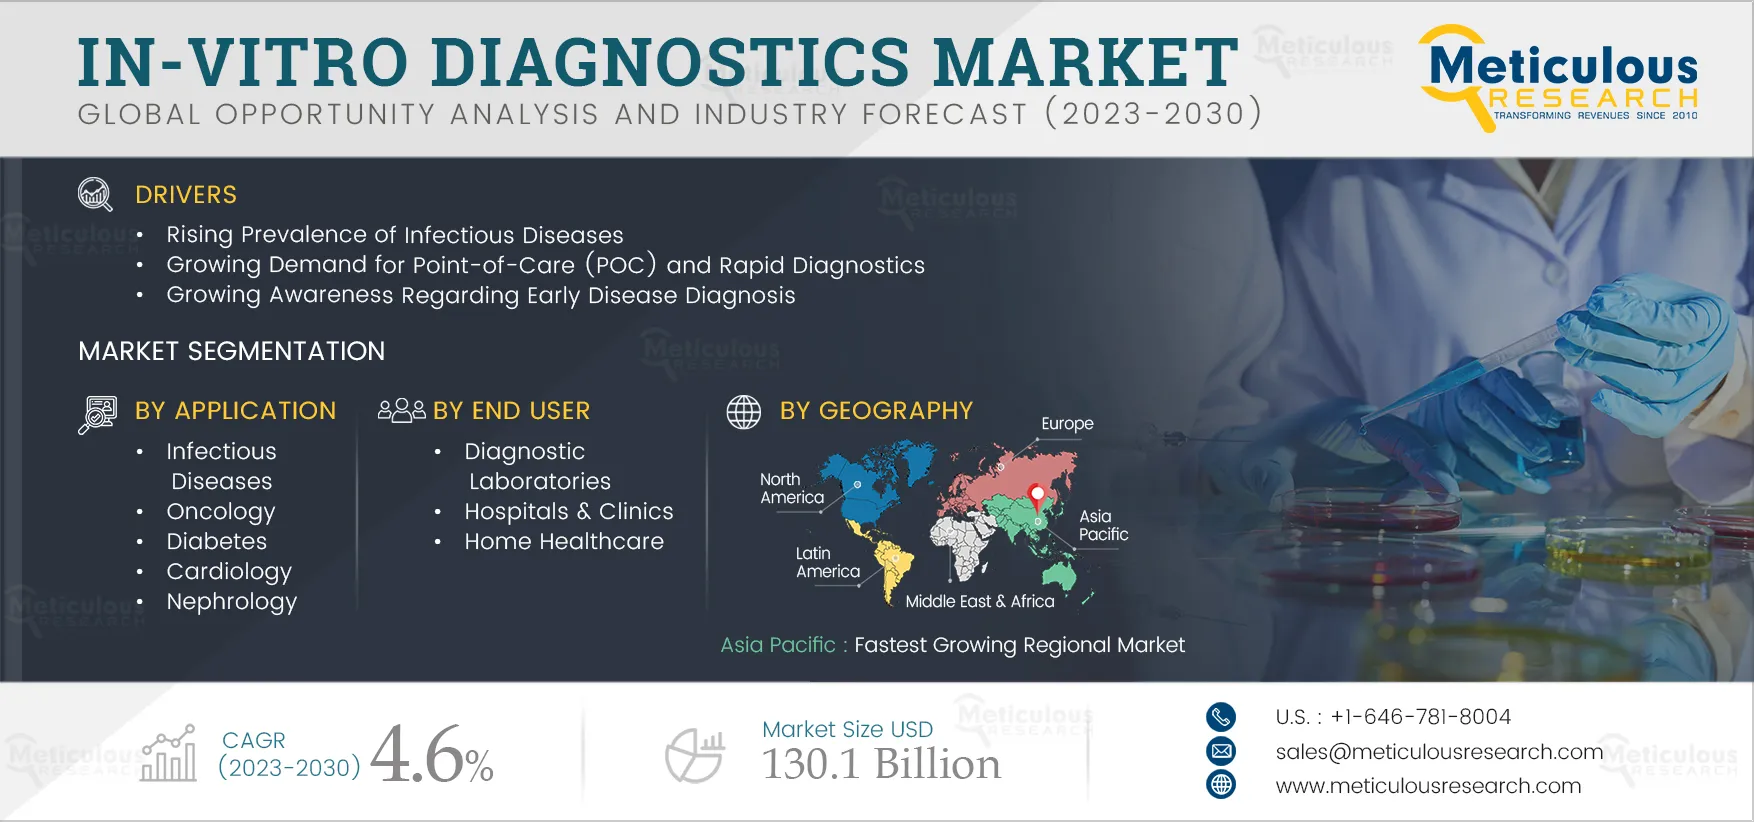  In-vitro Diagnostics Market